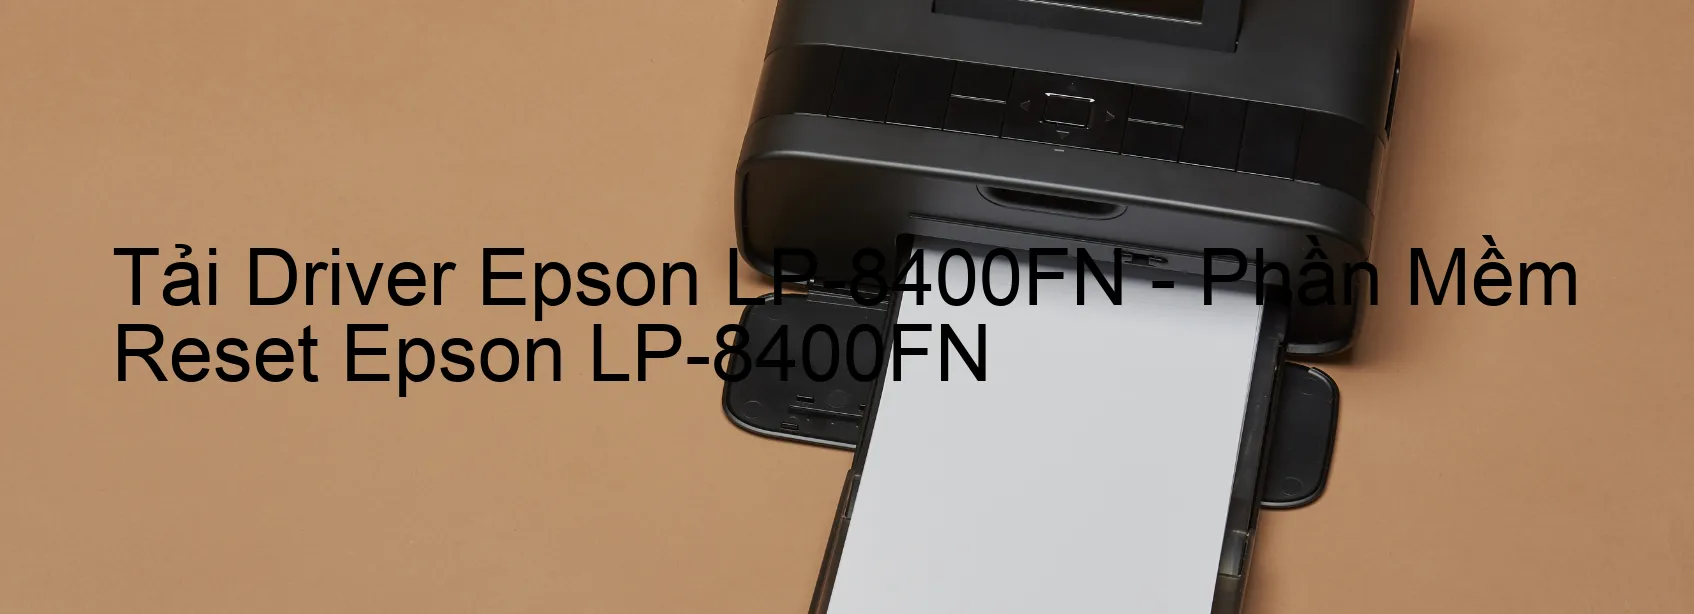 Driver Epson LP-8400FN, Phần Mềm Reset Epson LP-8400FN